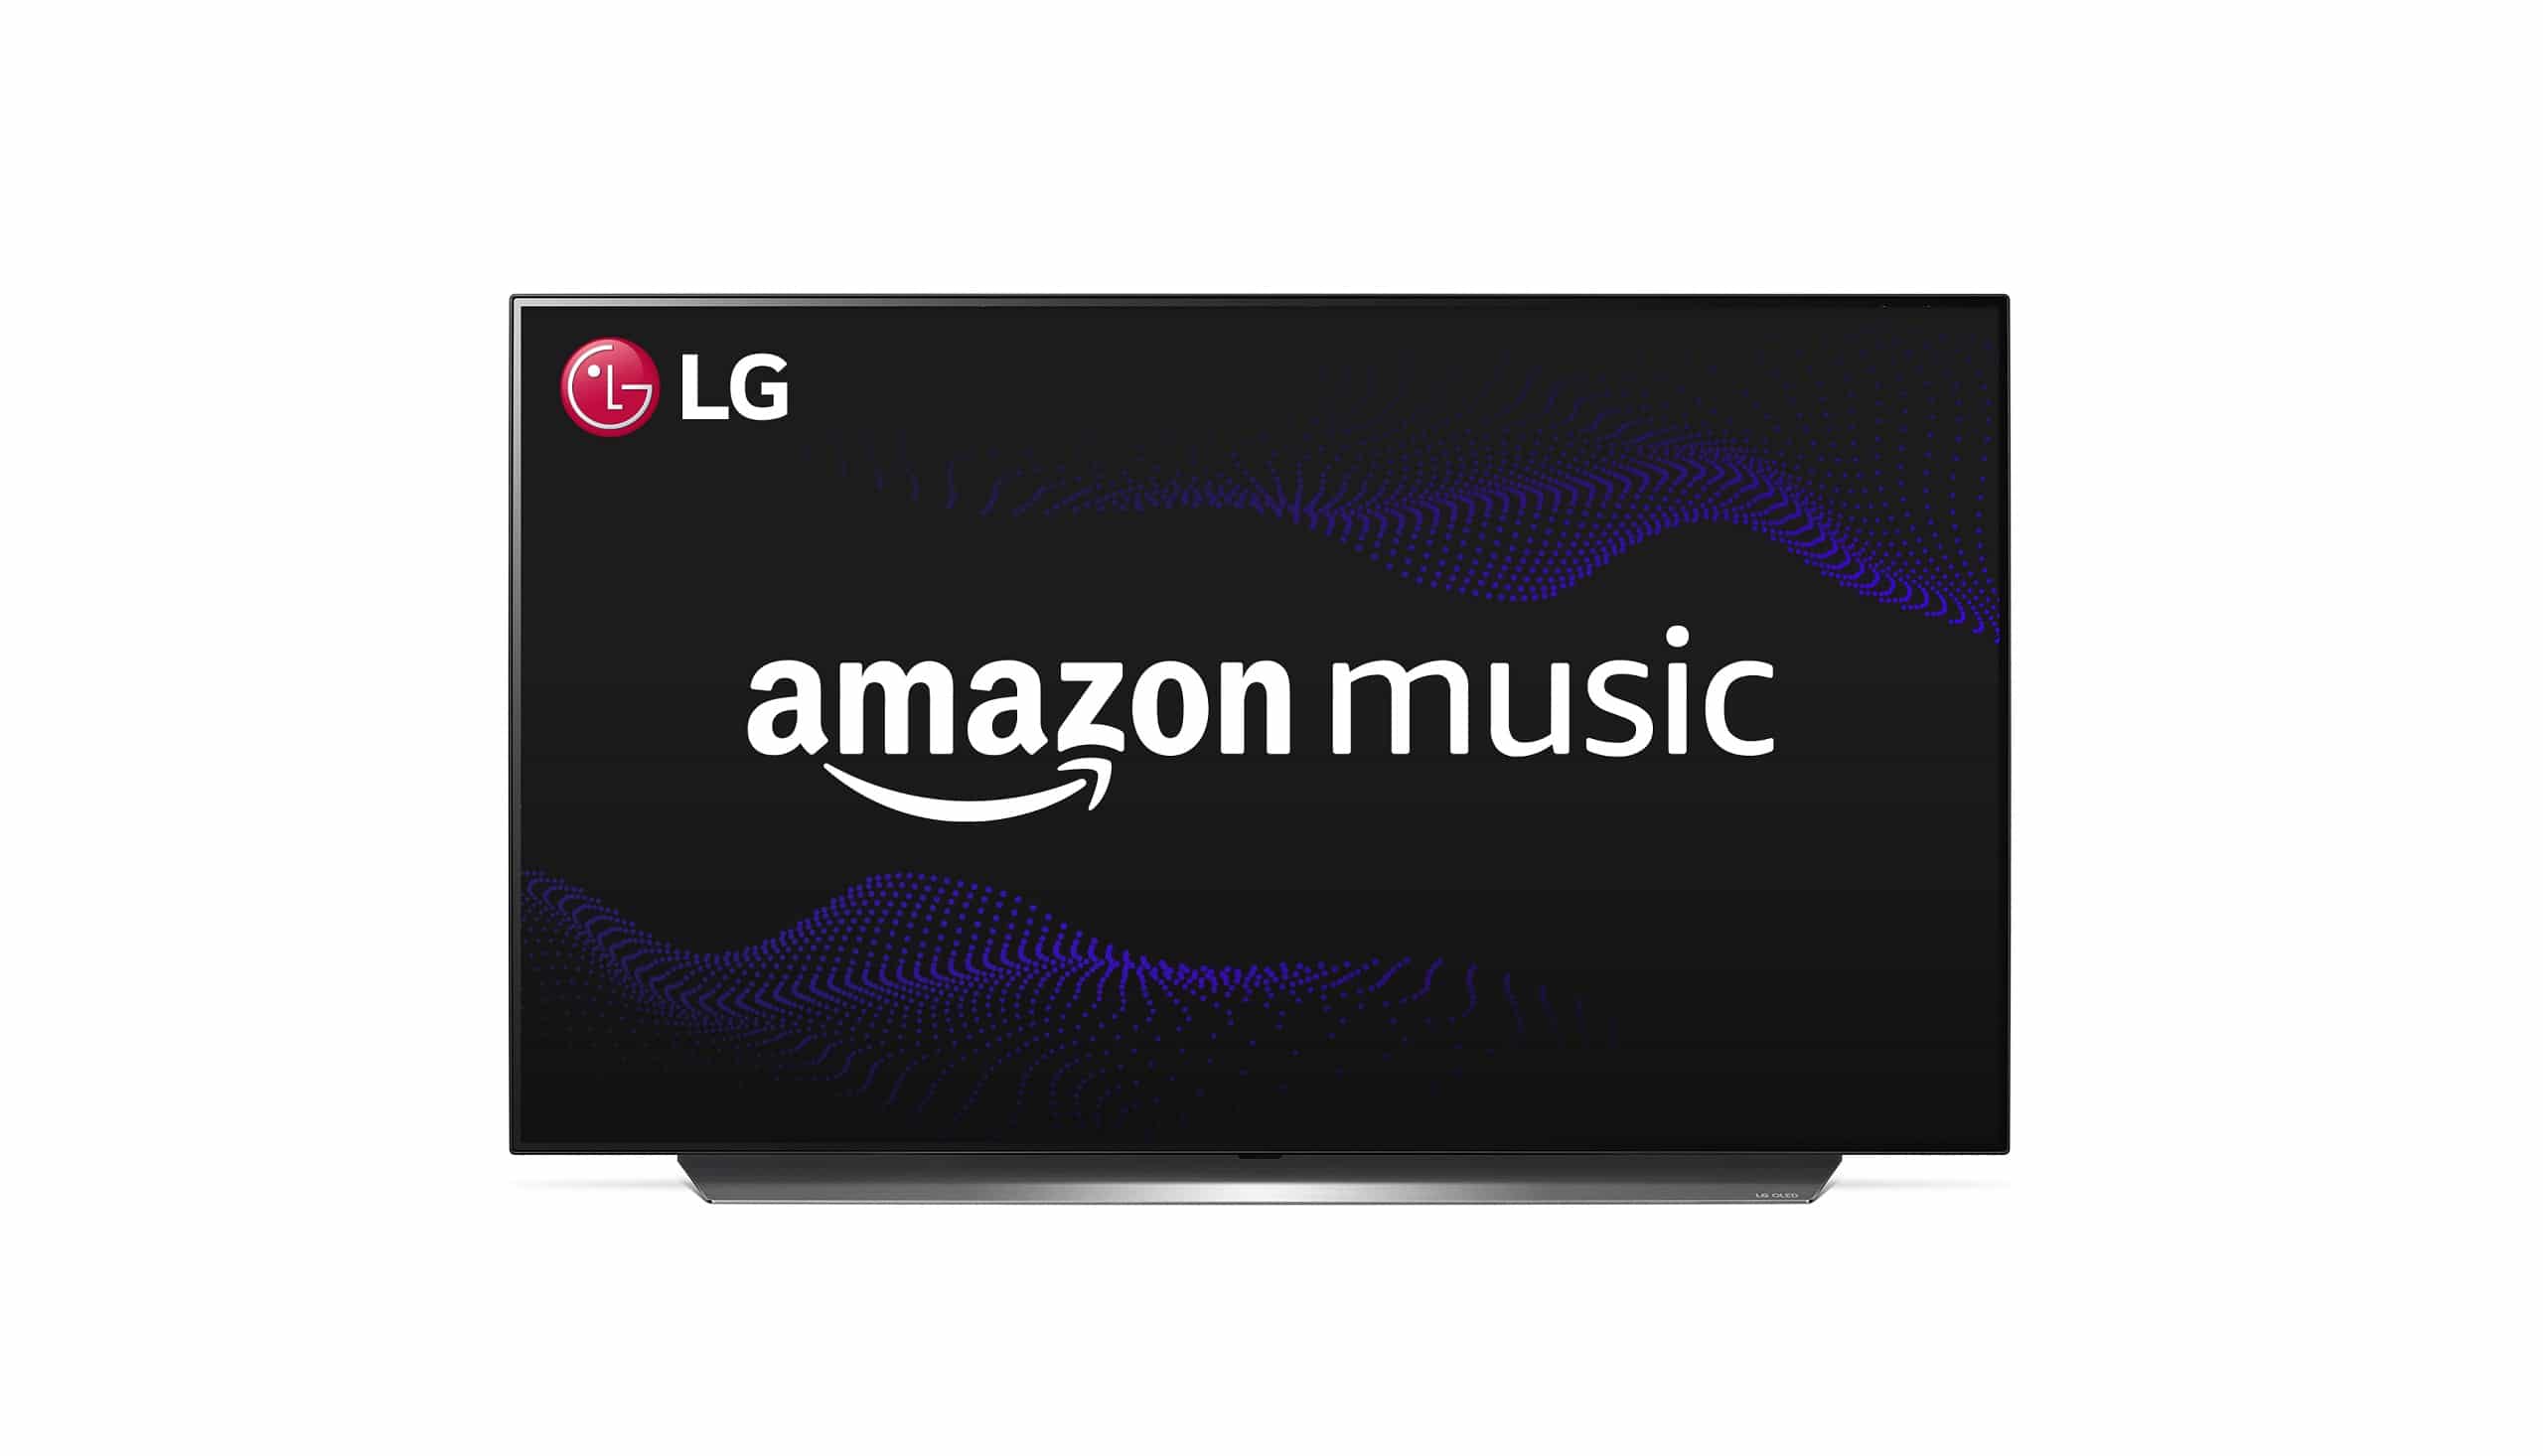 Amazon Prime Music Lg Tv